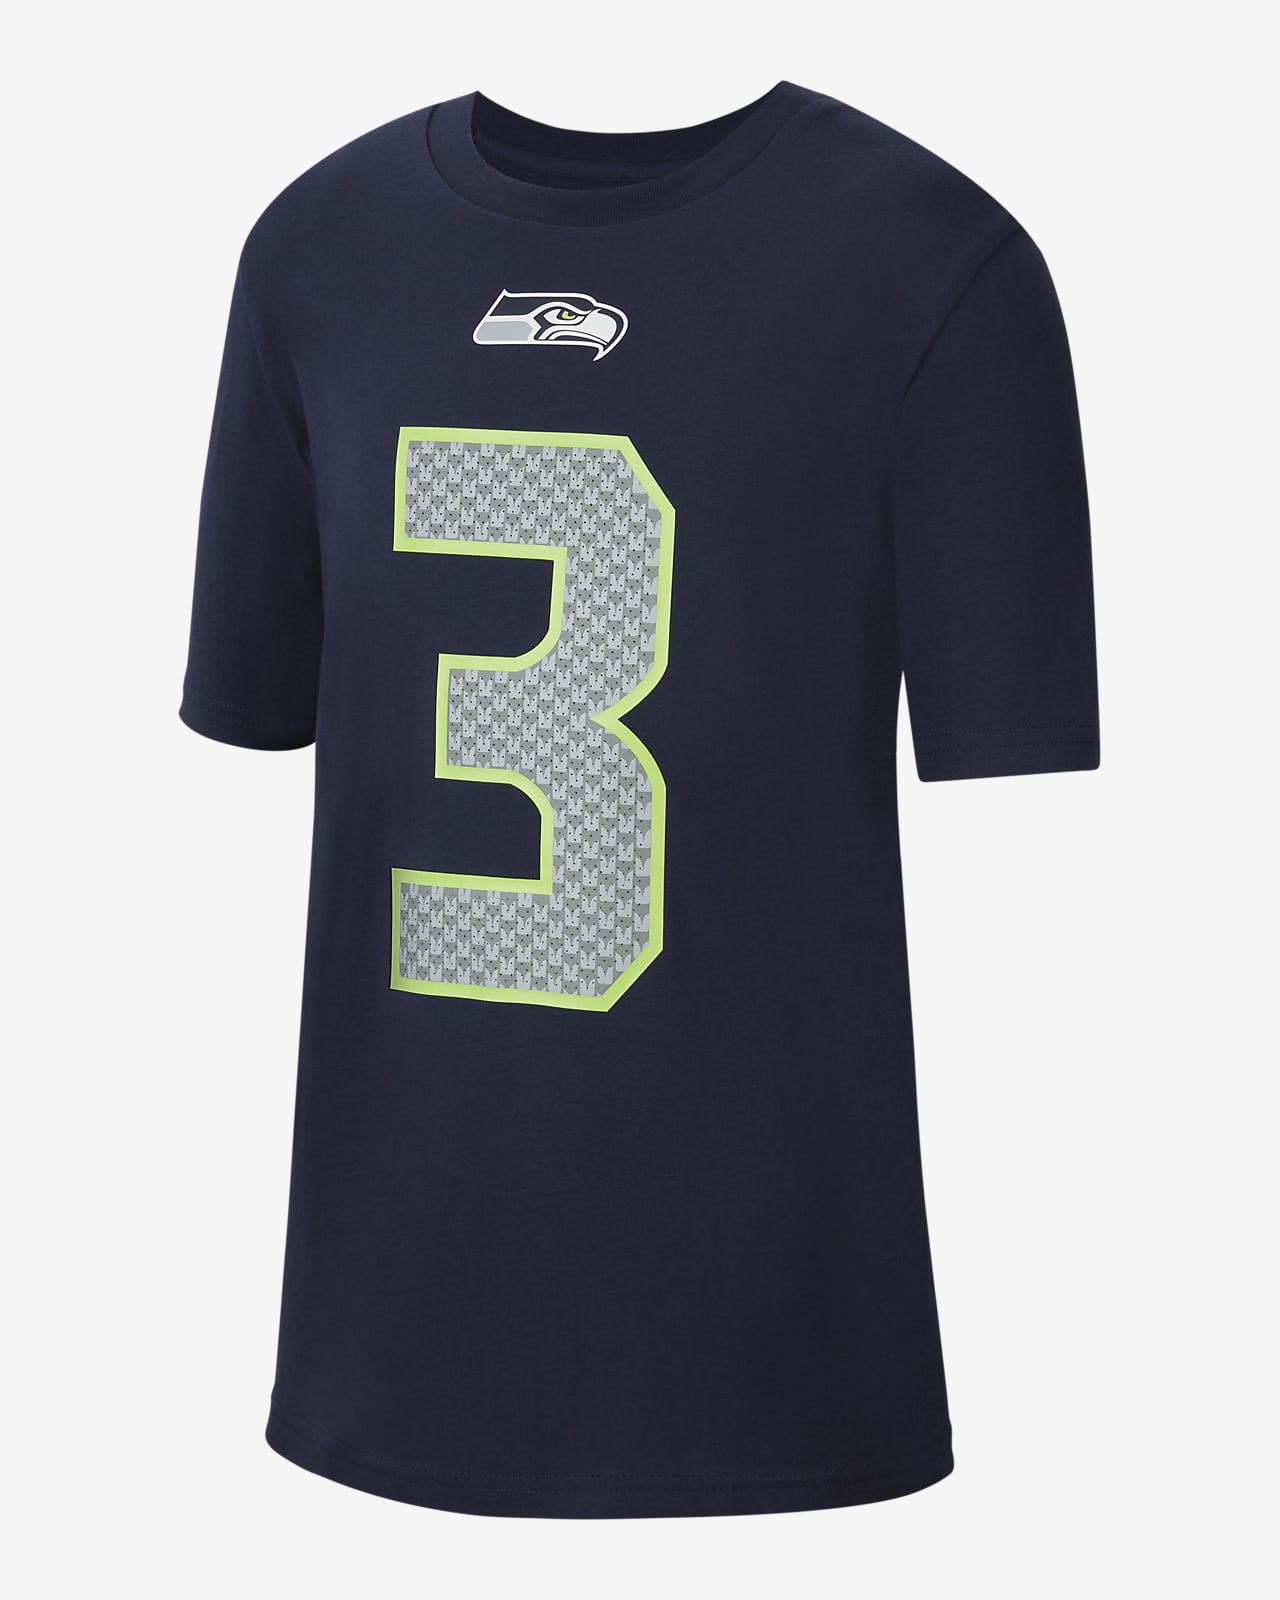 Tee-shirt Nike (NFL Seattle Seahawks) pour Enfant plus âgé